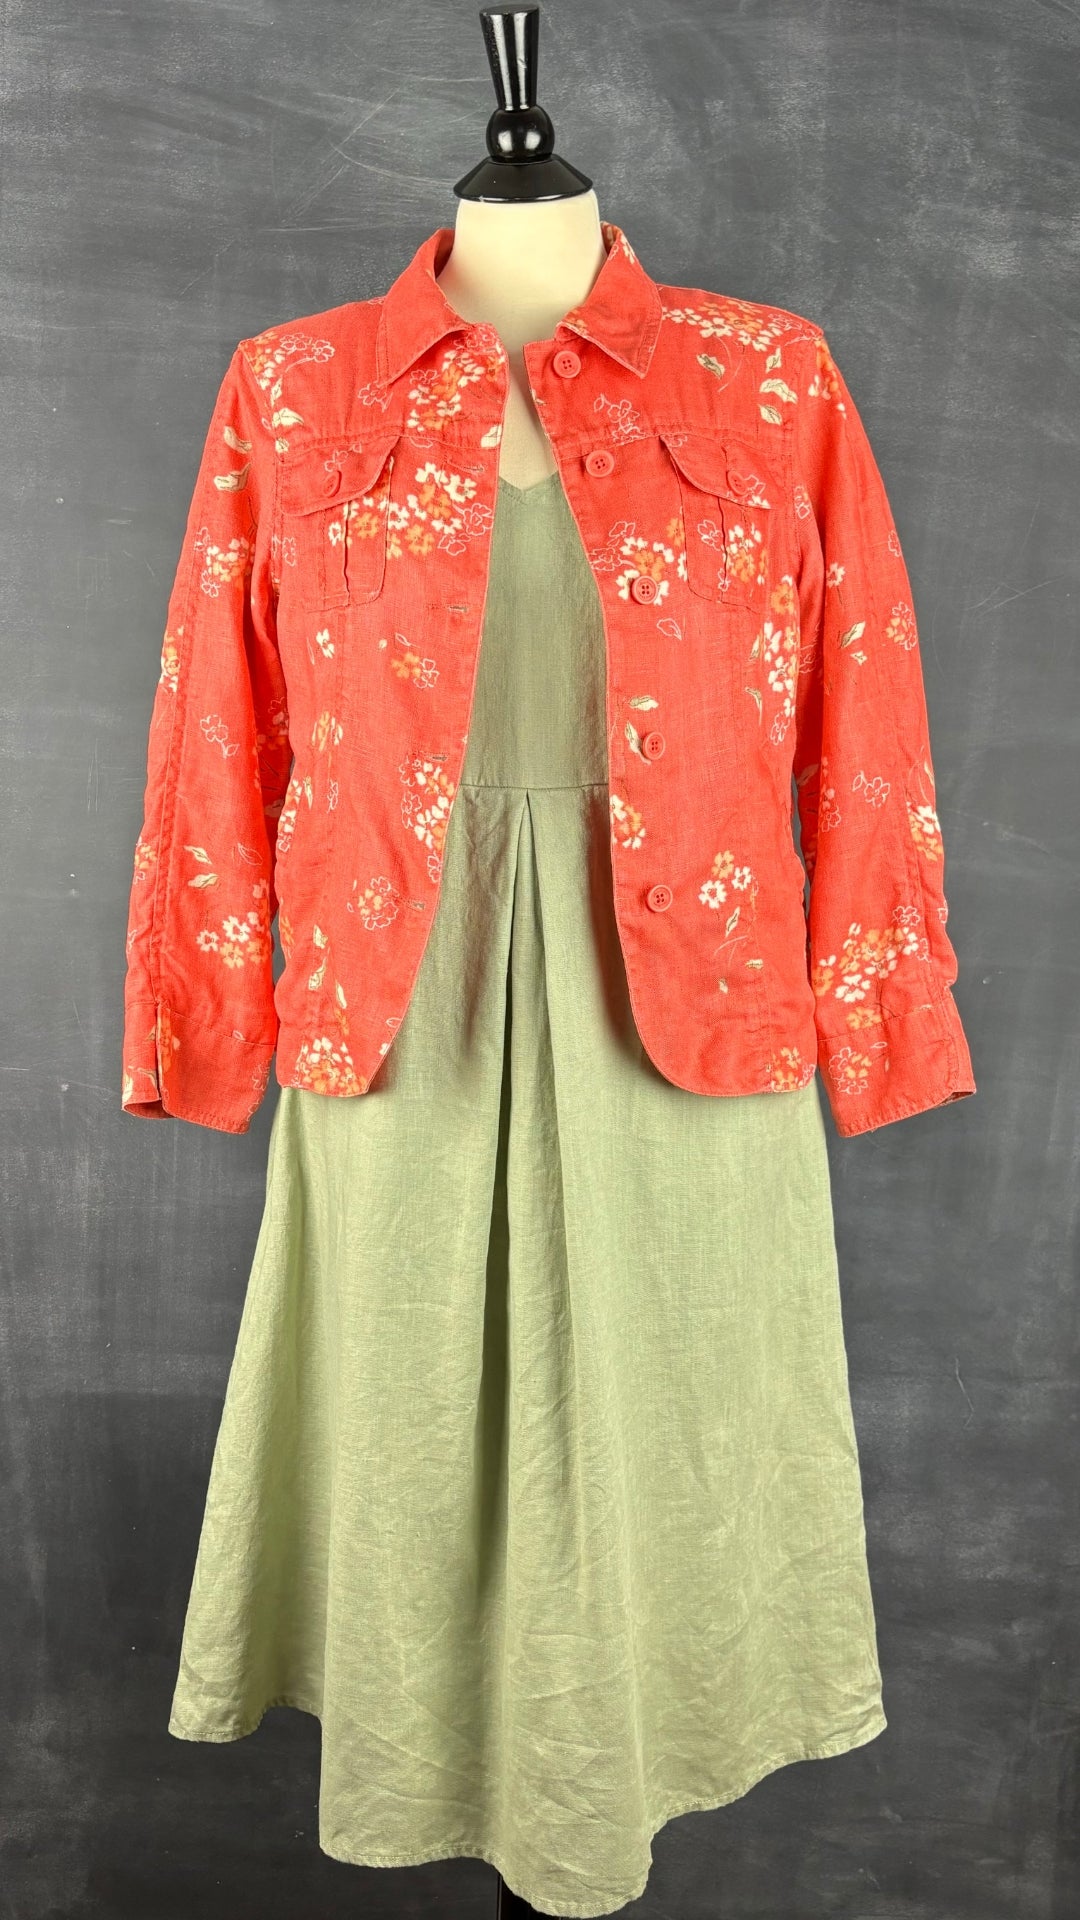 Veste florale corail en lin Jackpot, taille estimée medium. Vue de l'agencement avec la robe en lin sauge.